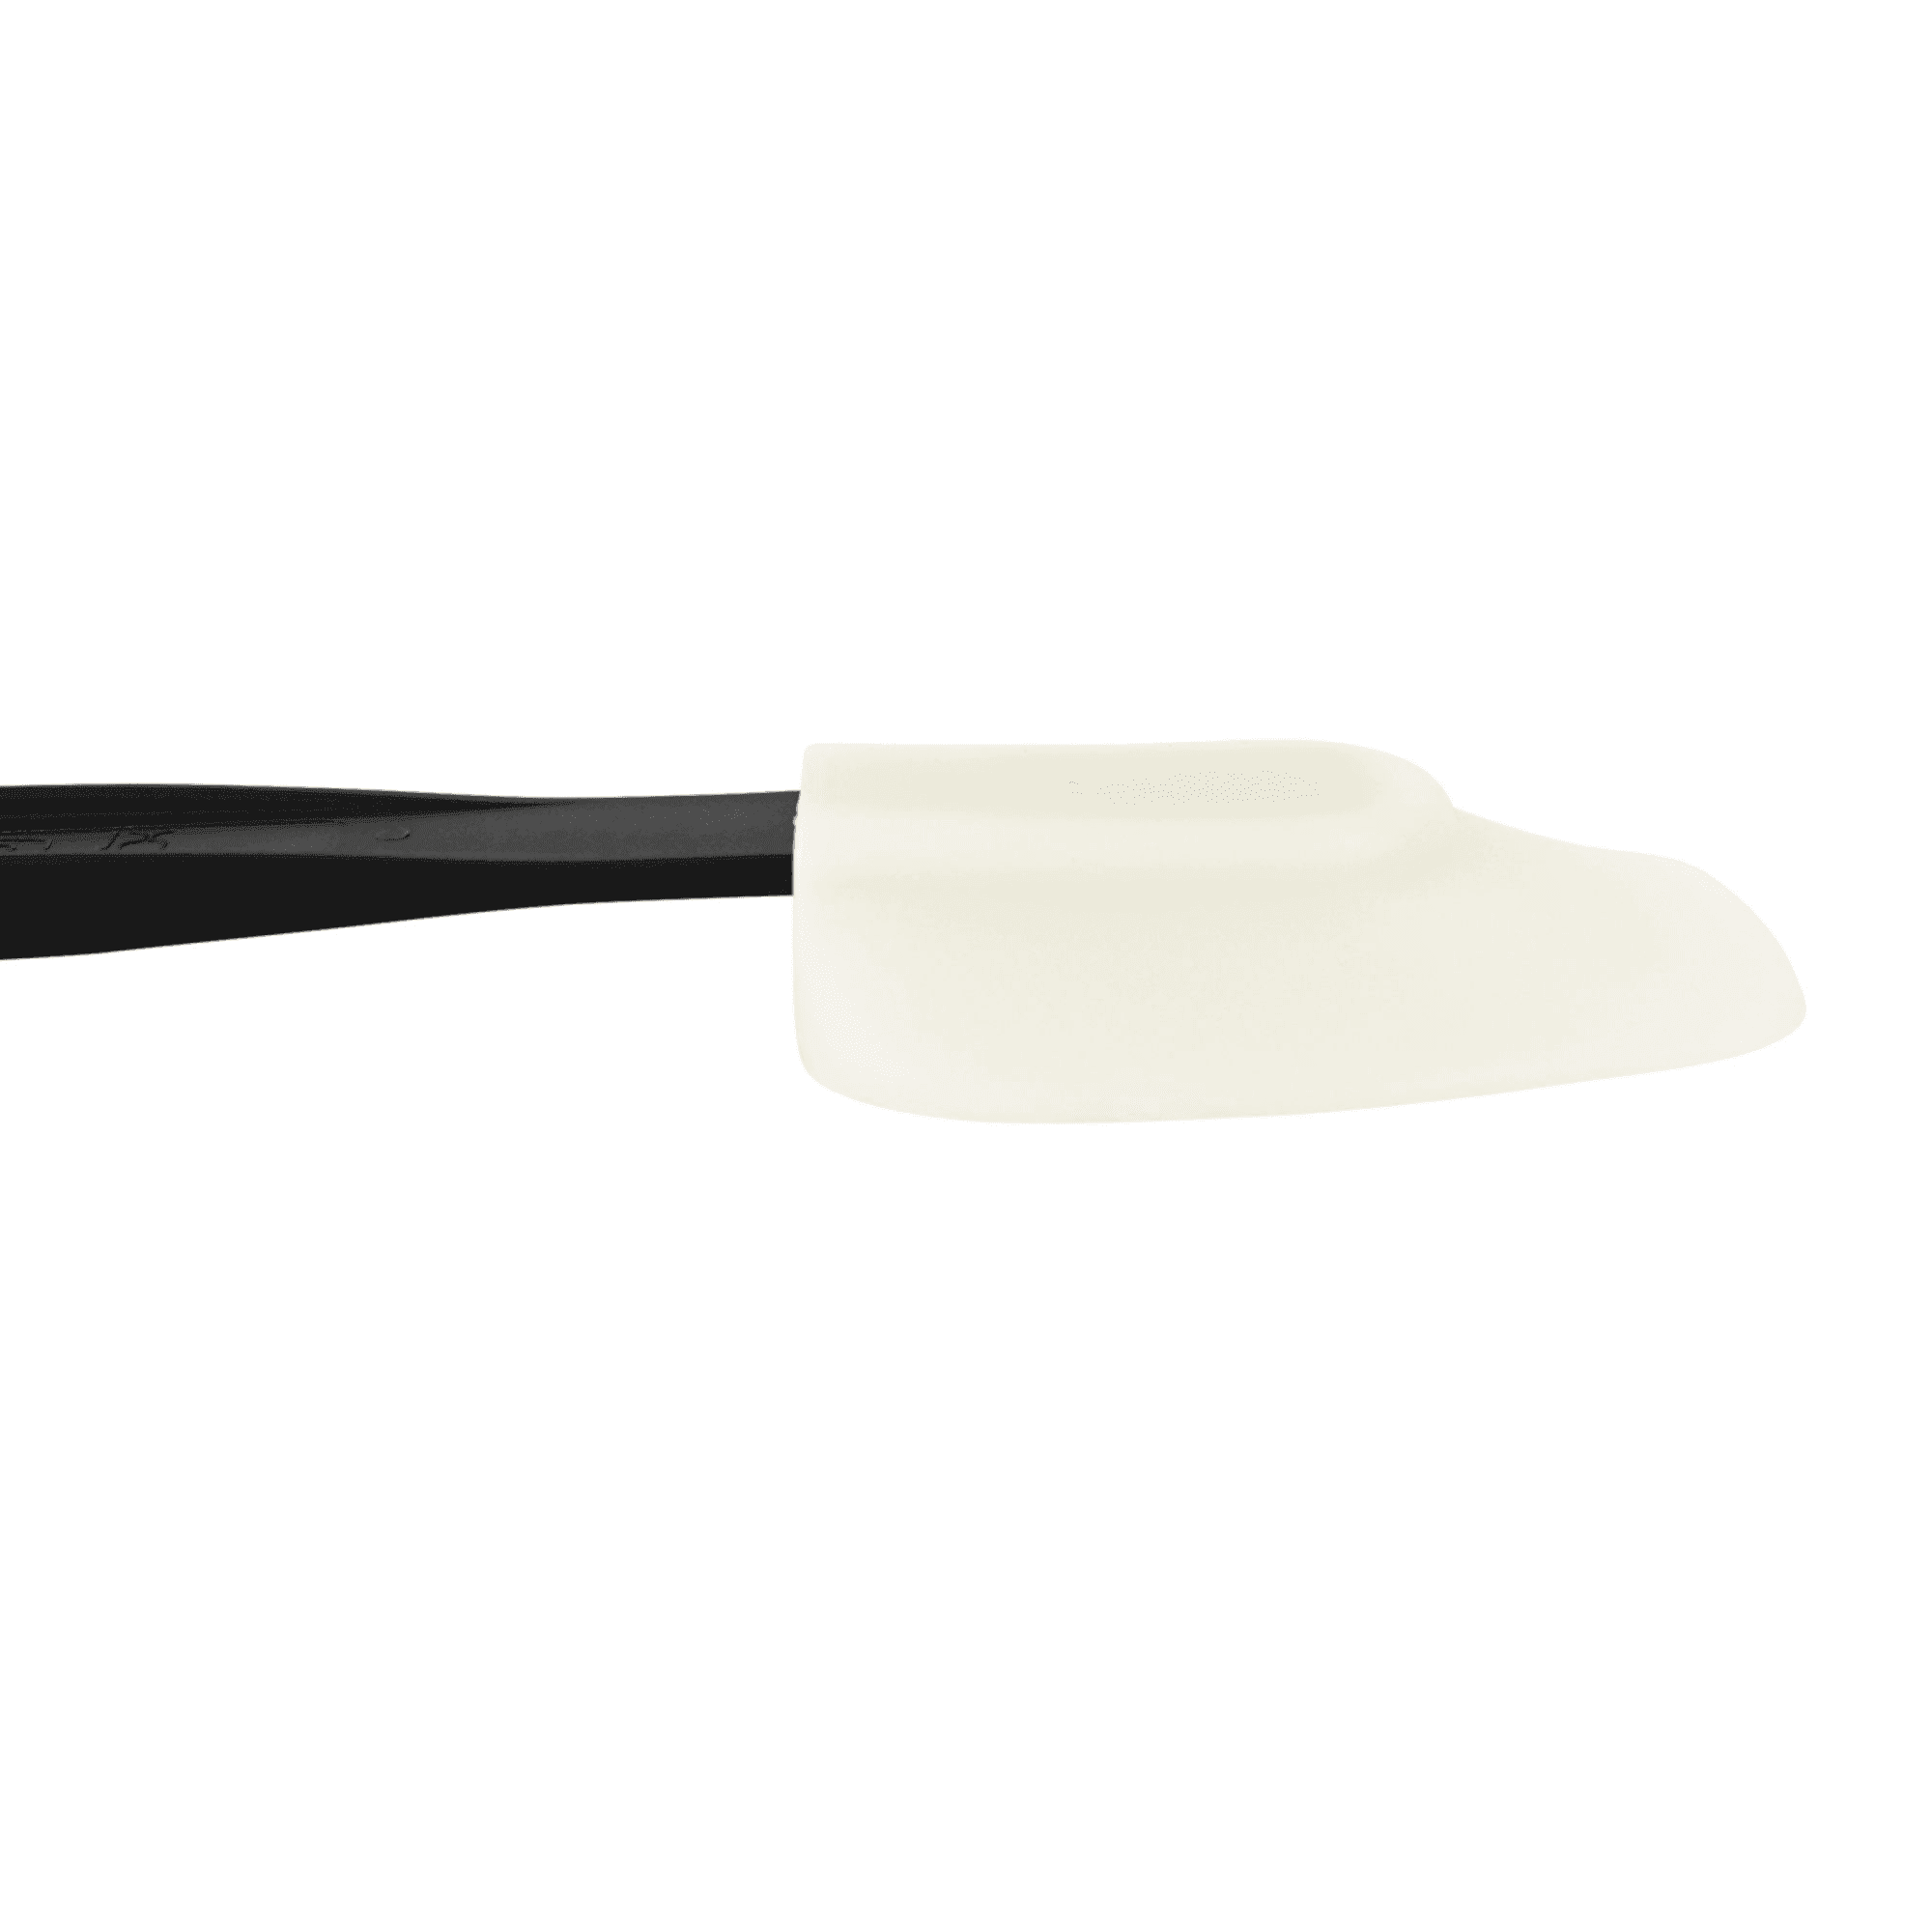 Mondo Professional Silicone Spoon Spatula 35cm Black Image 4